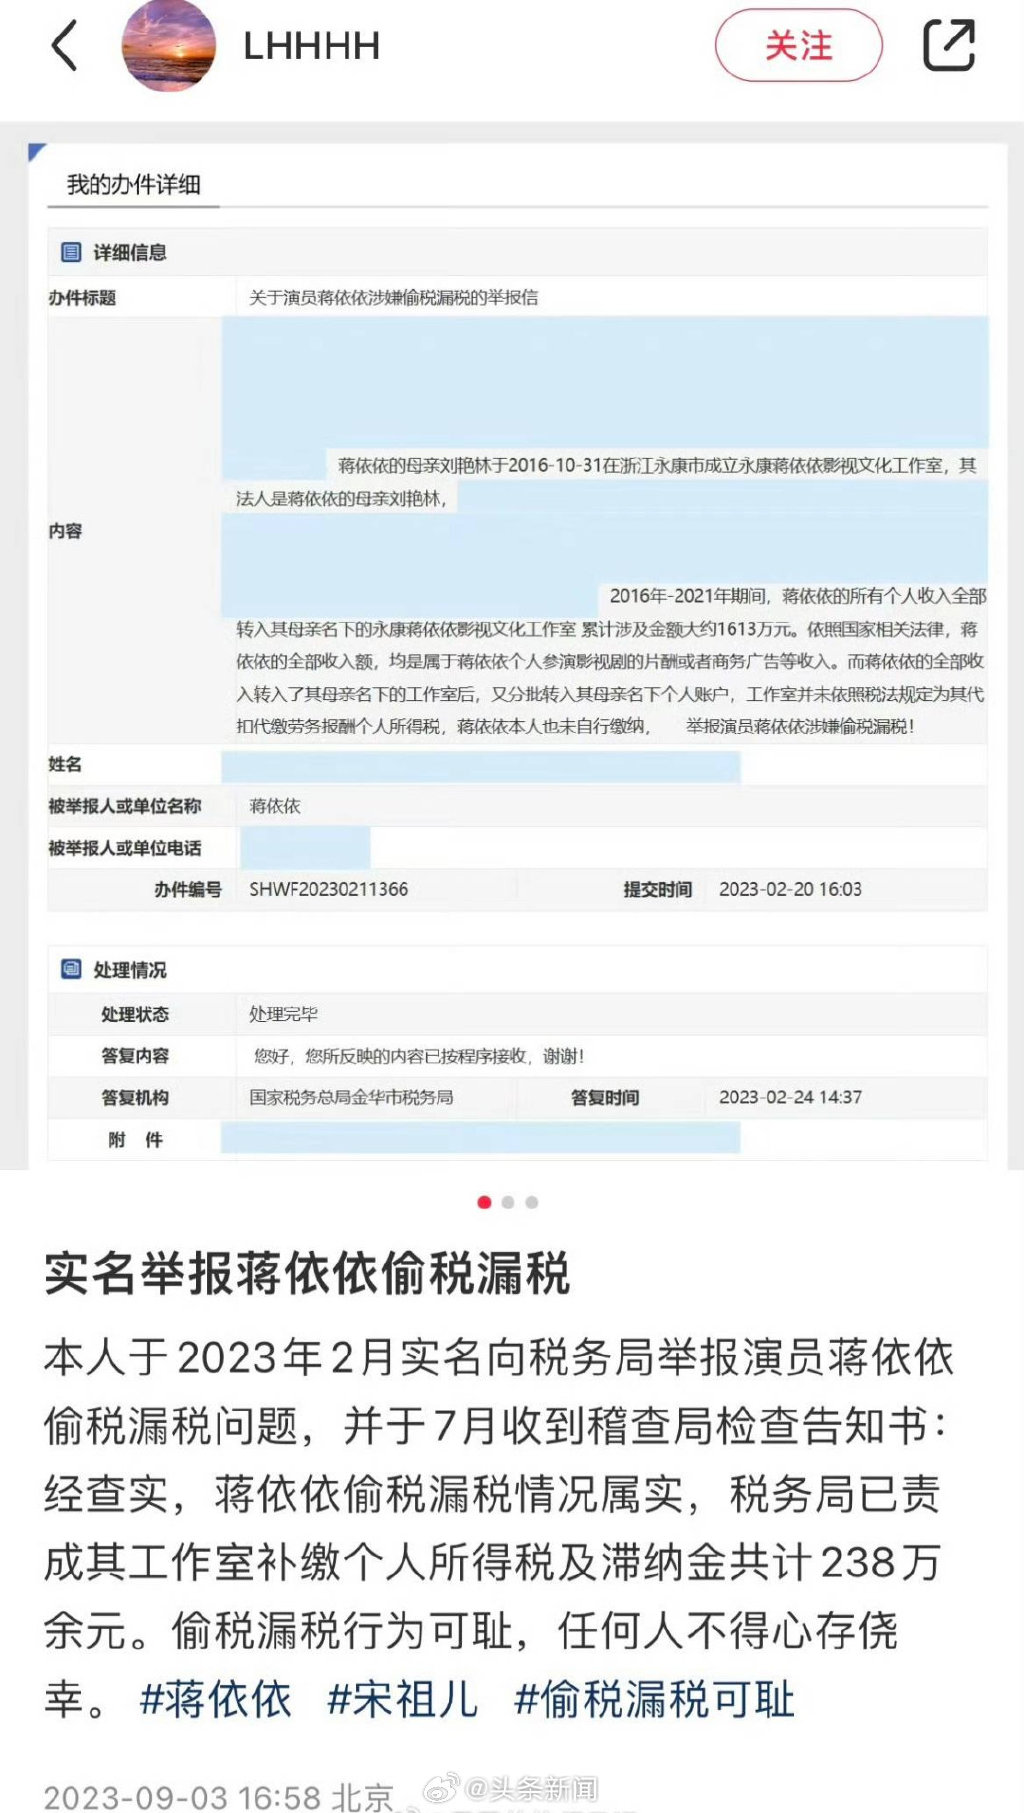 爆料人声称早在2021年税务局曾约谈蒋依依调查她的税务状况。